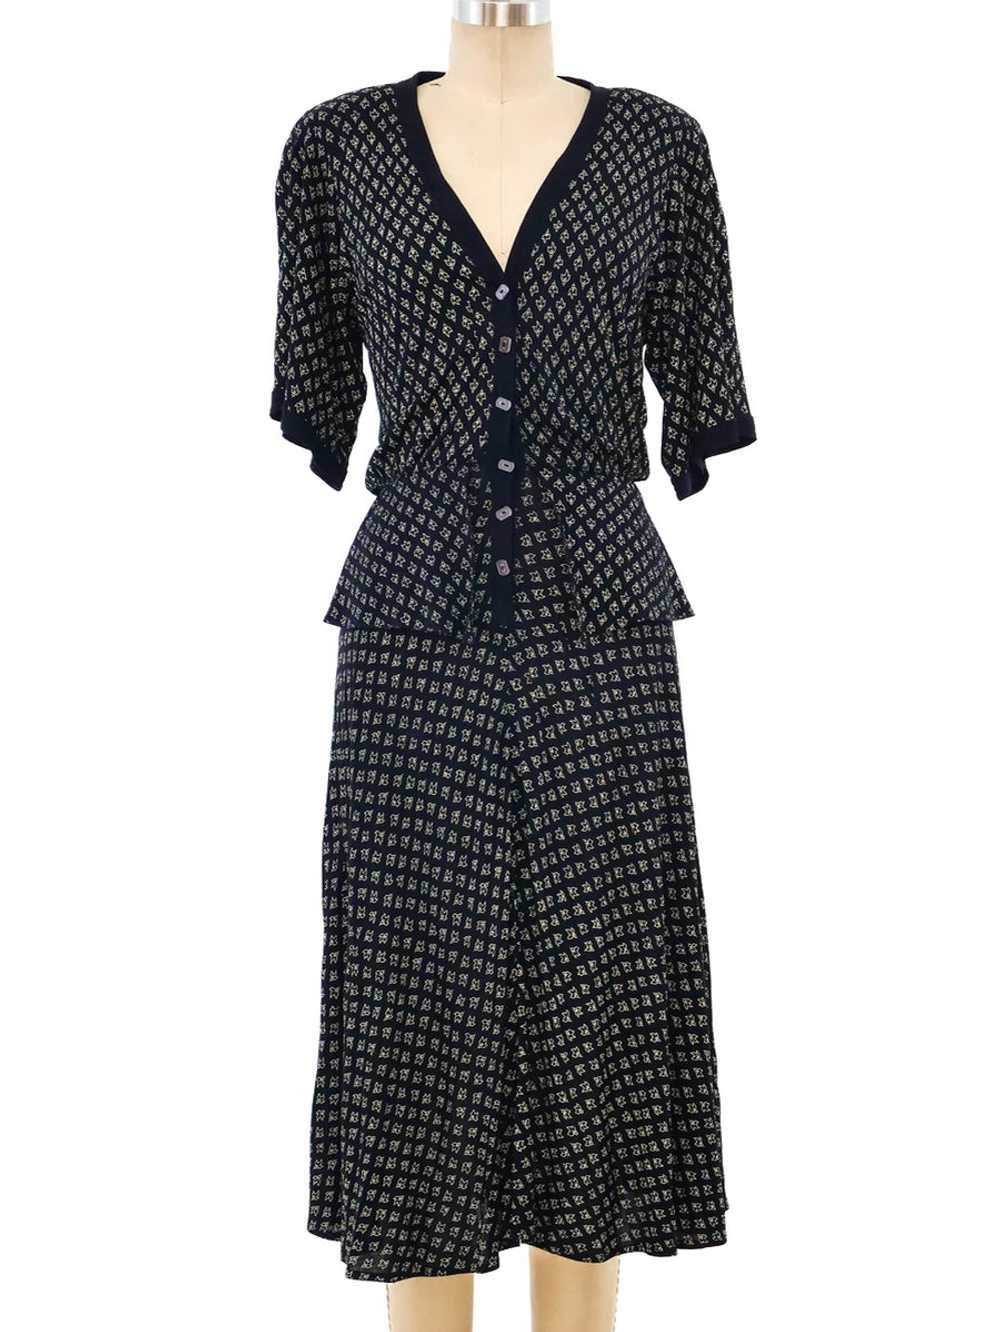 Jean Muir Peplum Jersey Dress - image 1